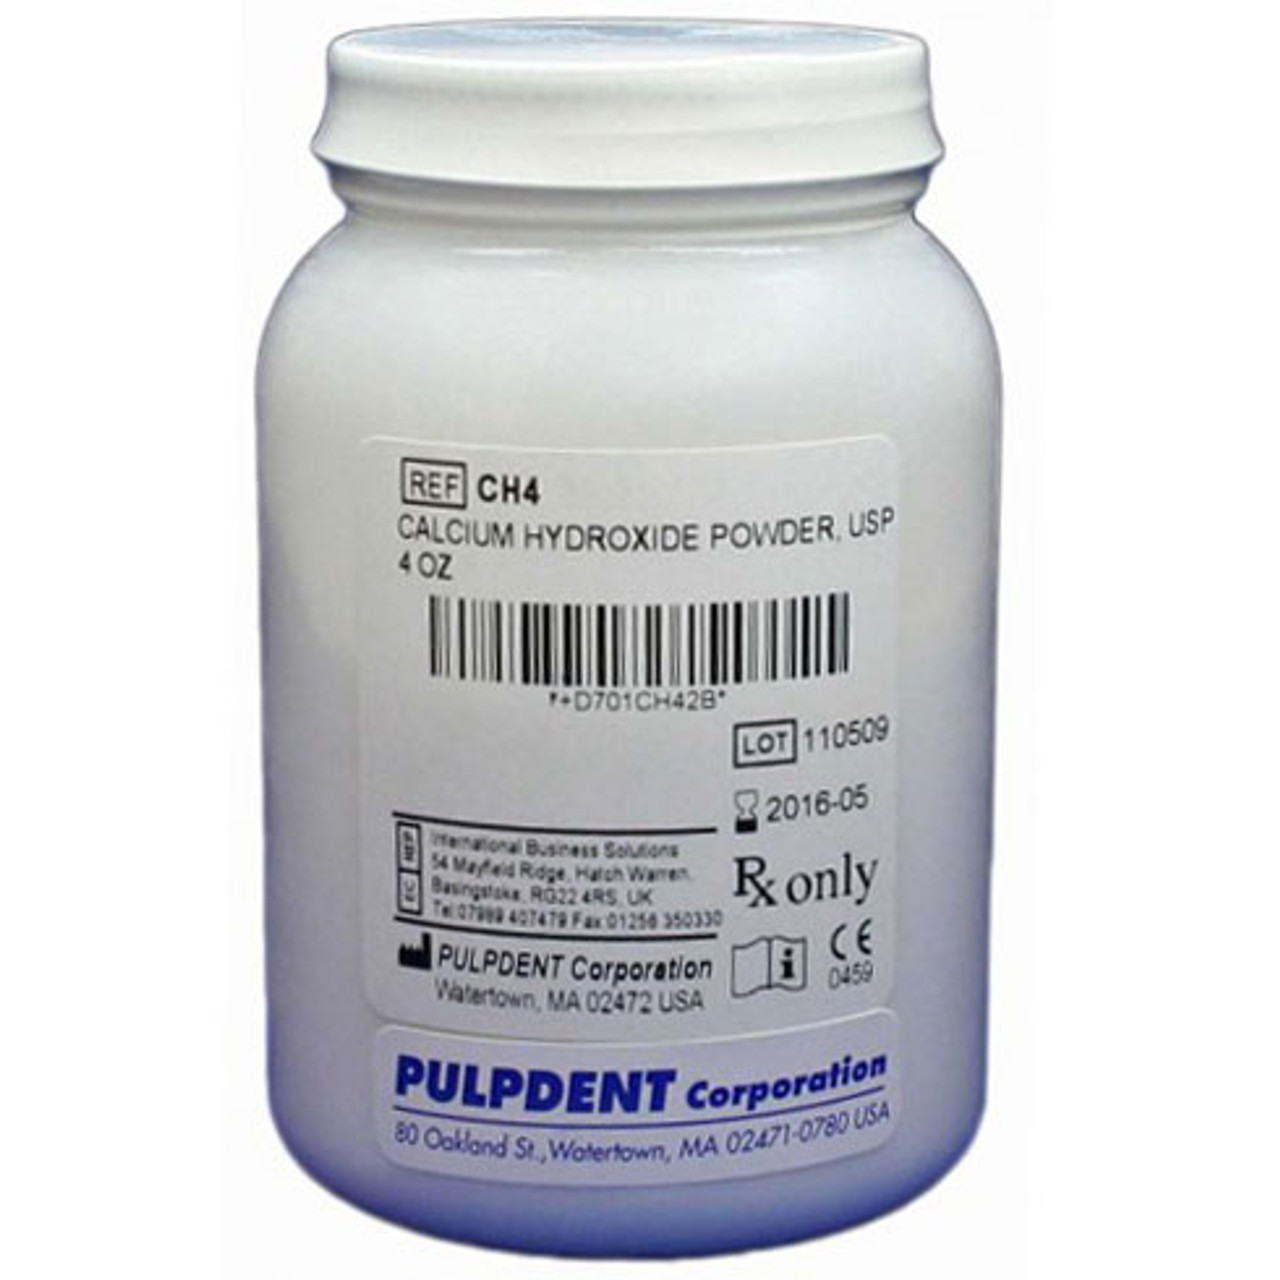 Pulpdent Calcium Hydroxide Powder, 4 oz